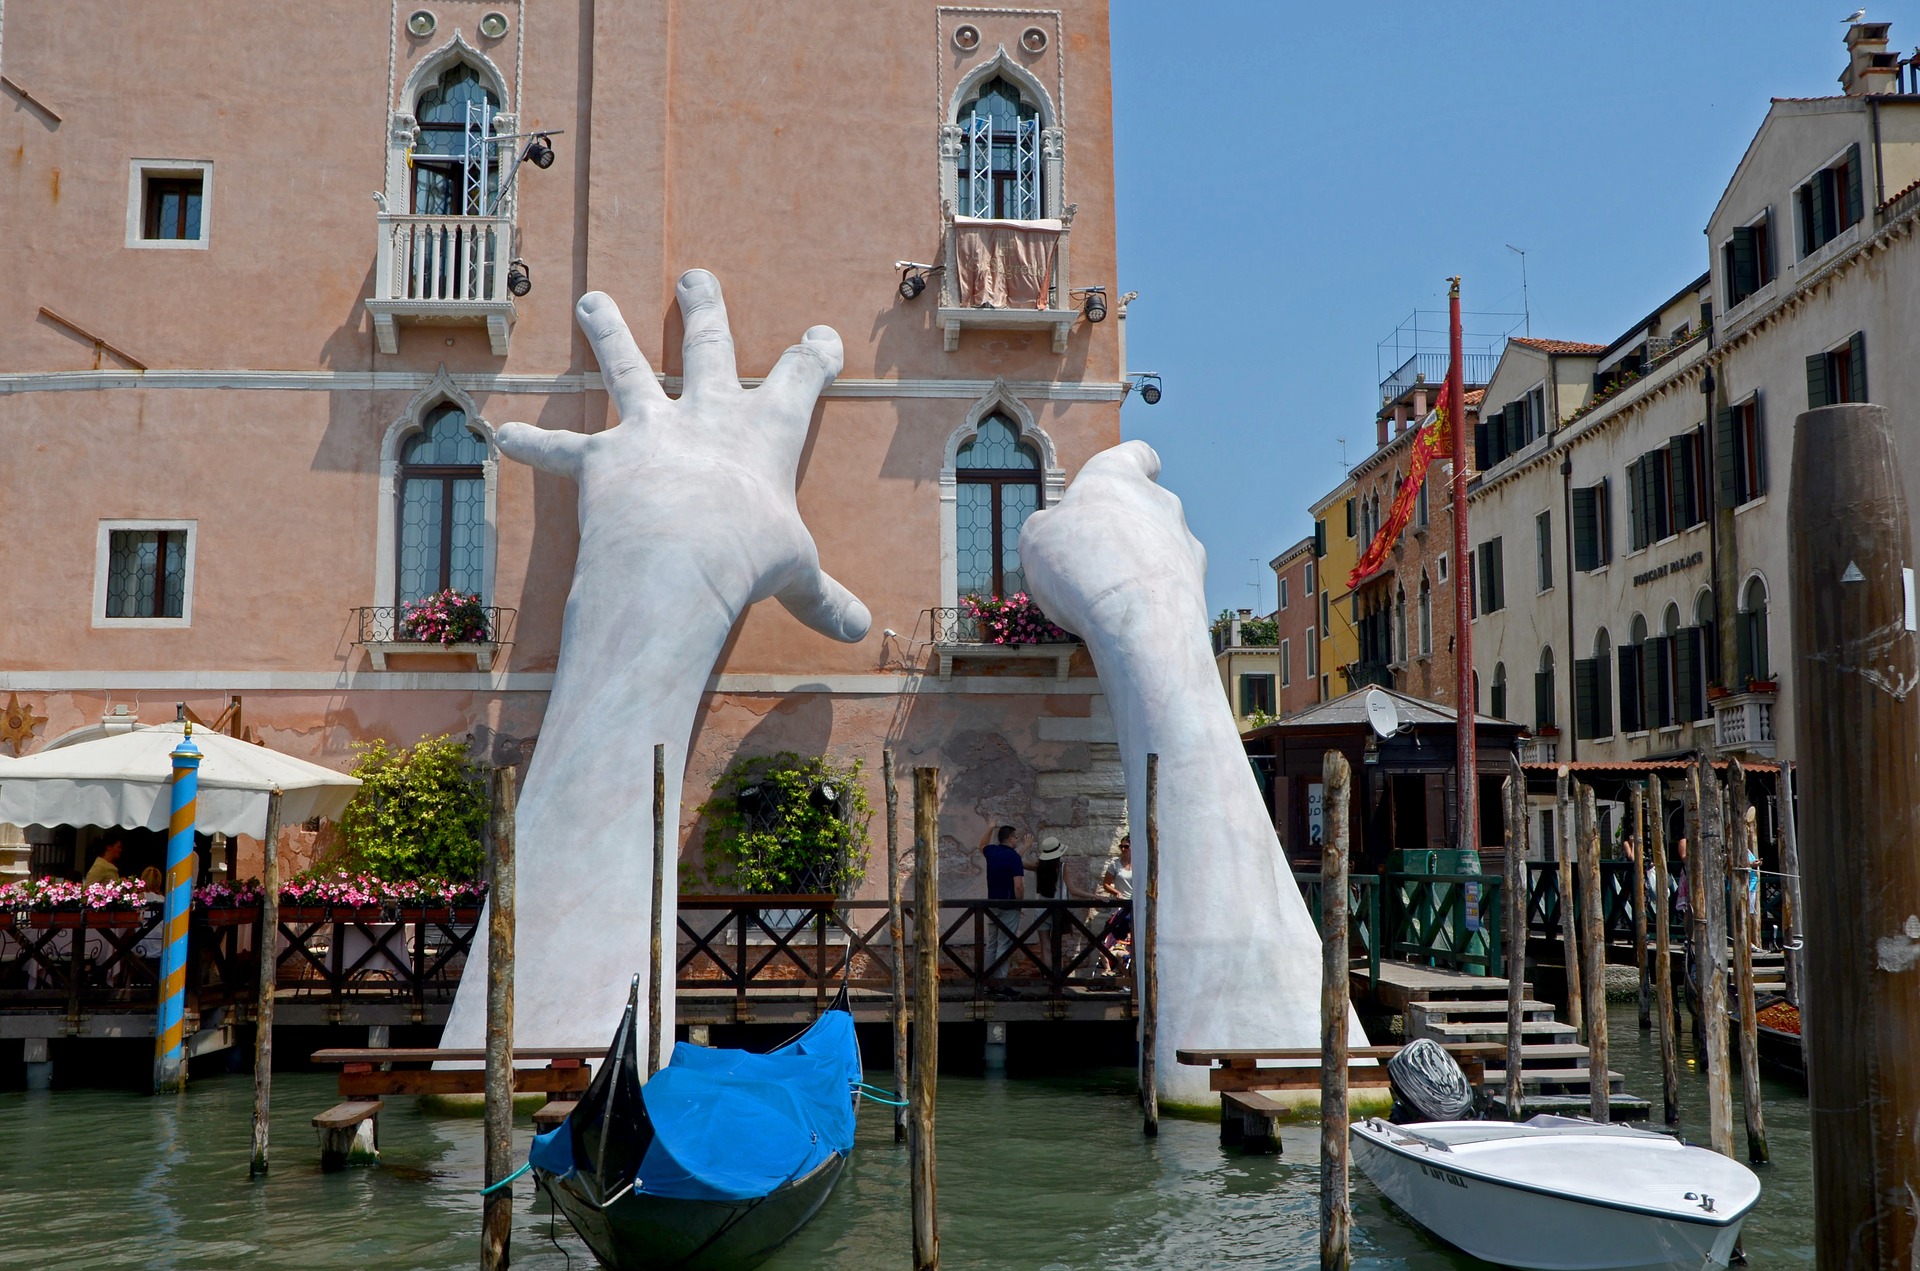 Das Bild zeigt, wie zwei riesige Hände ein Haus in Venedig stützen.